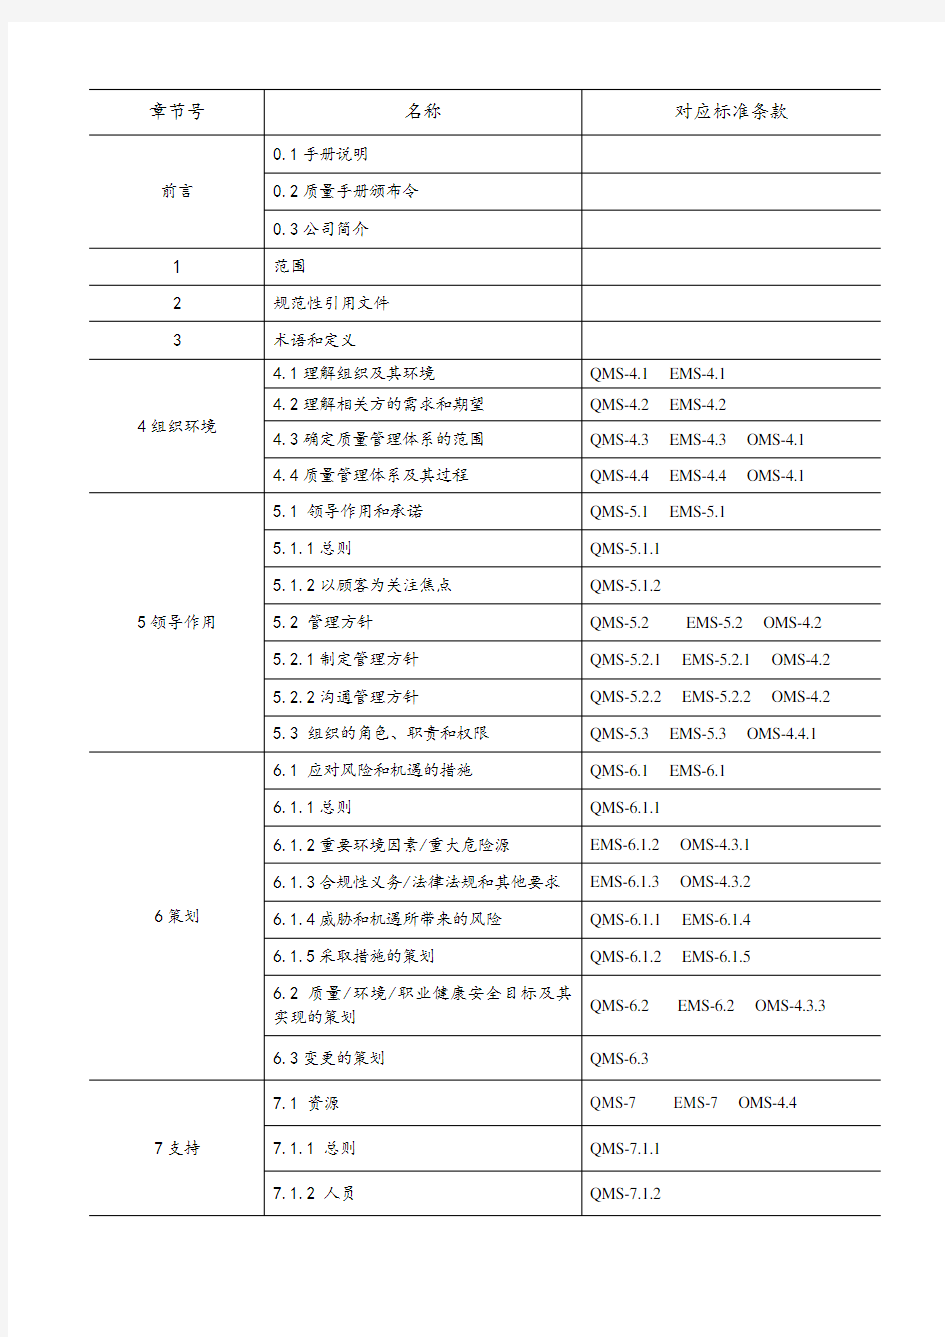 2015版三体系管理手册组织机构及职能分配表